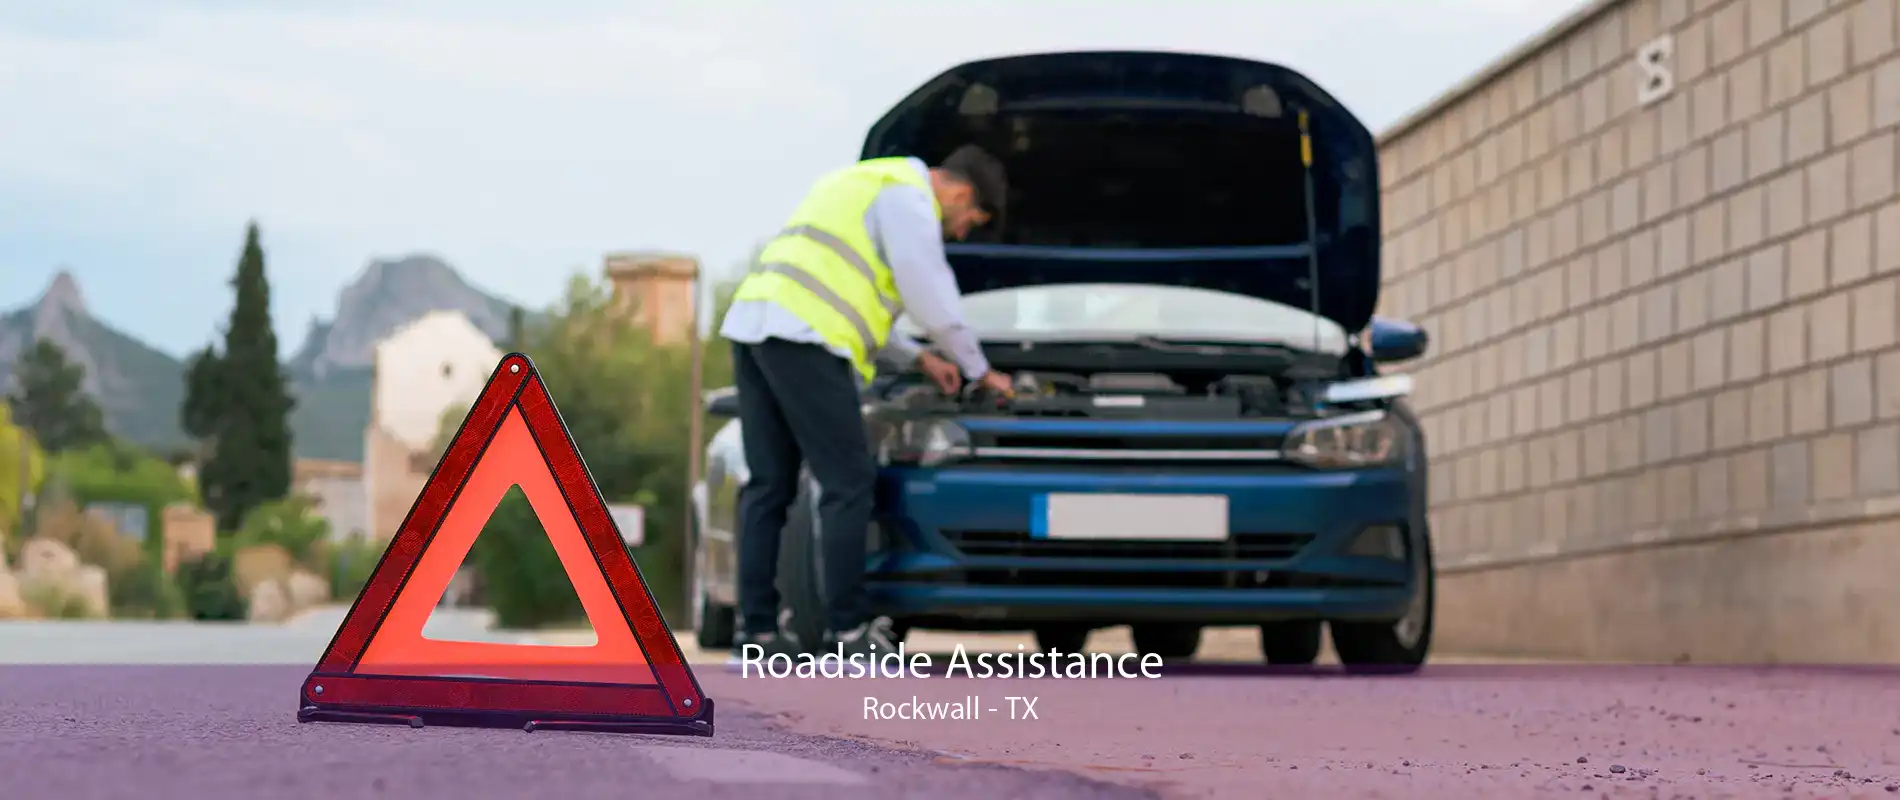 Roadside Assistance Rockwall - TX